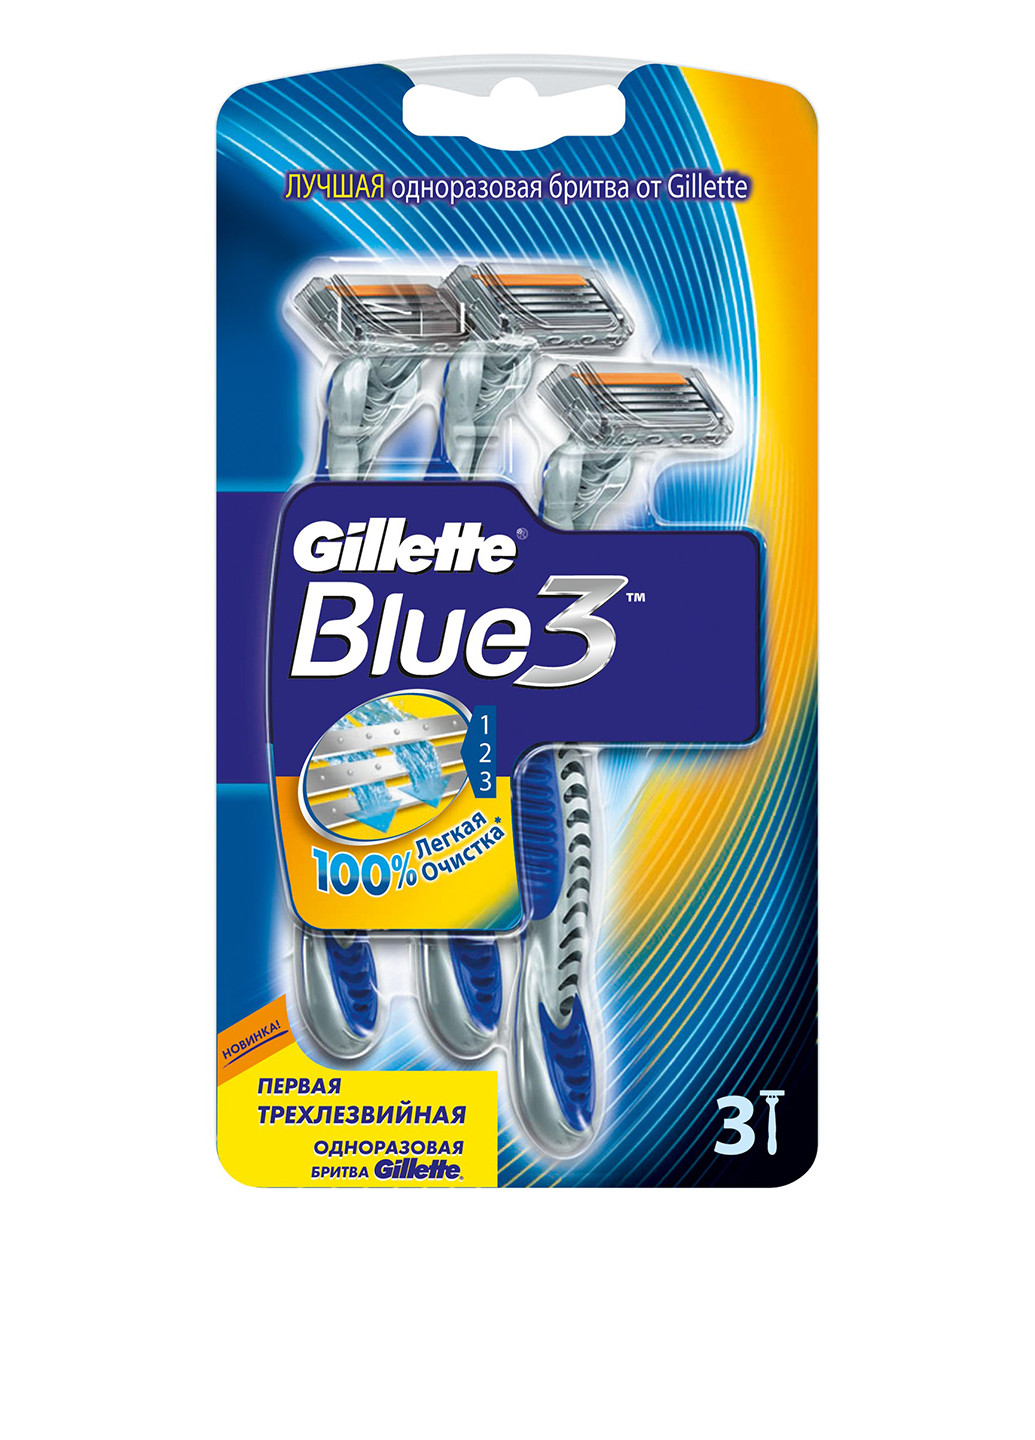 Бритва одноразовая Blue 3 (3 шт.) Gillette (8641503)